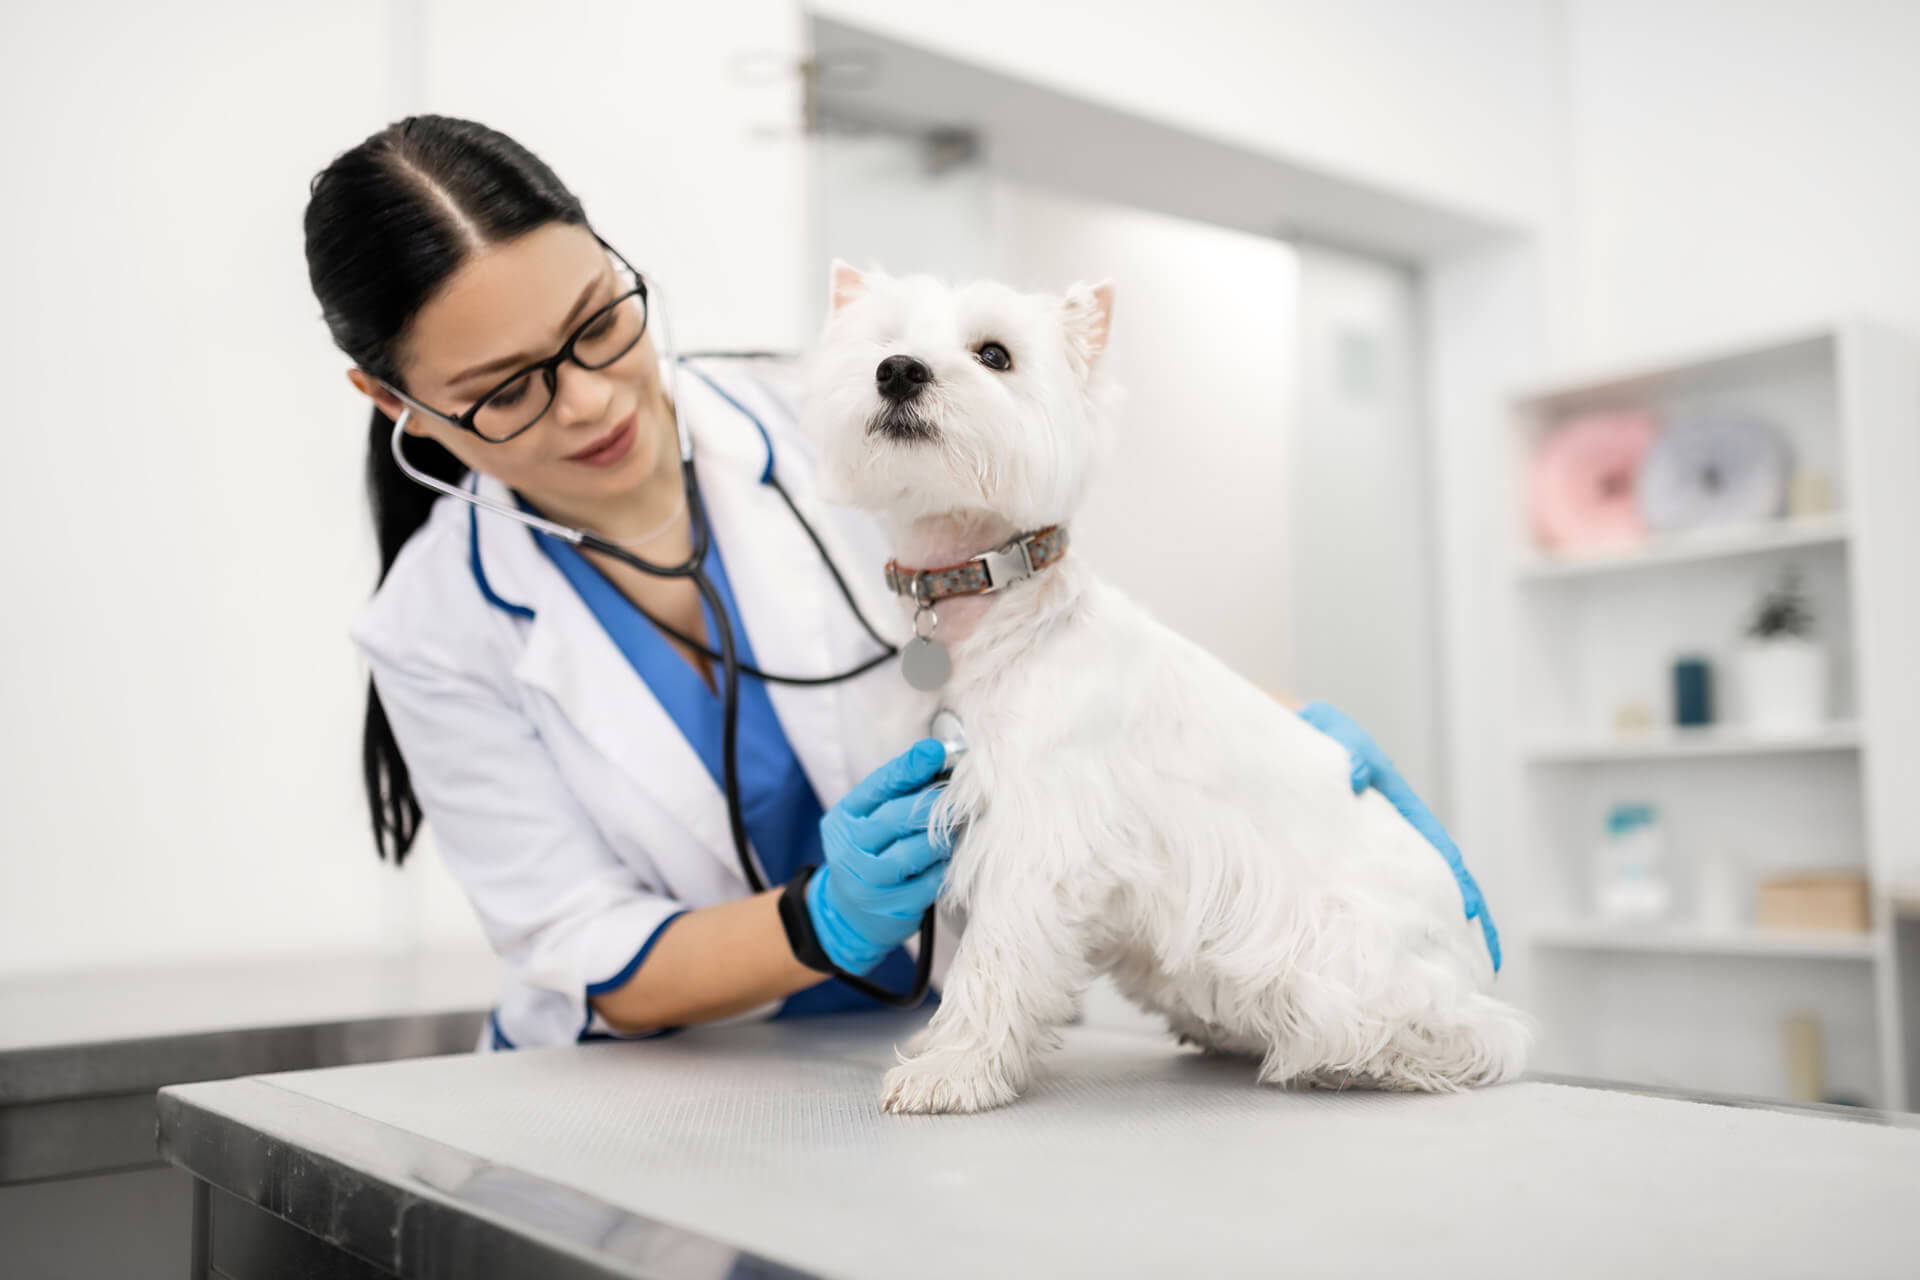 Veterinaria con bata blanca realizando un examen a un perro, ¿los perros pueden comer chocolate?